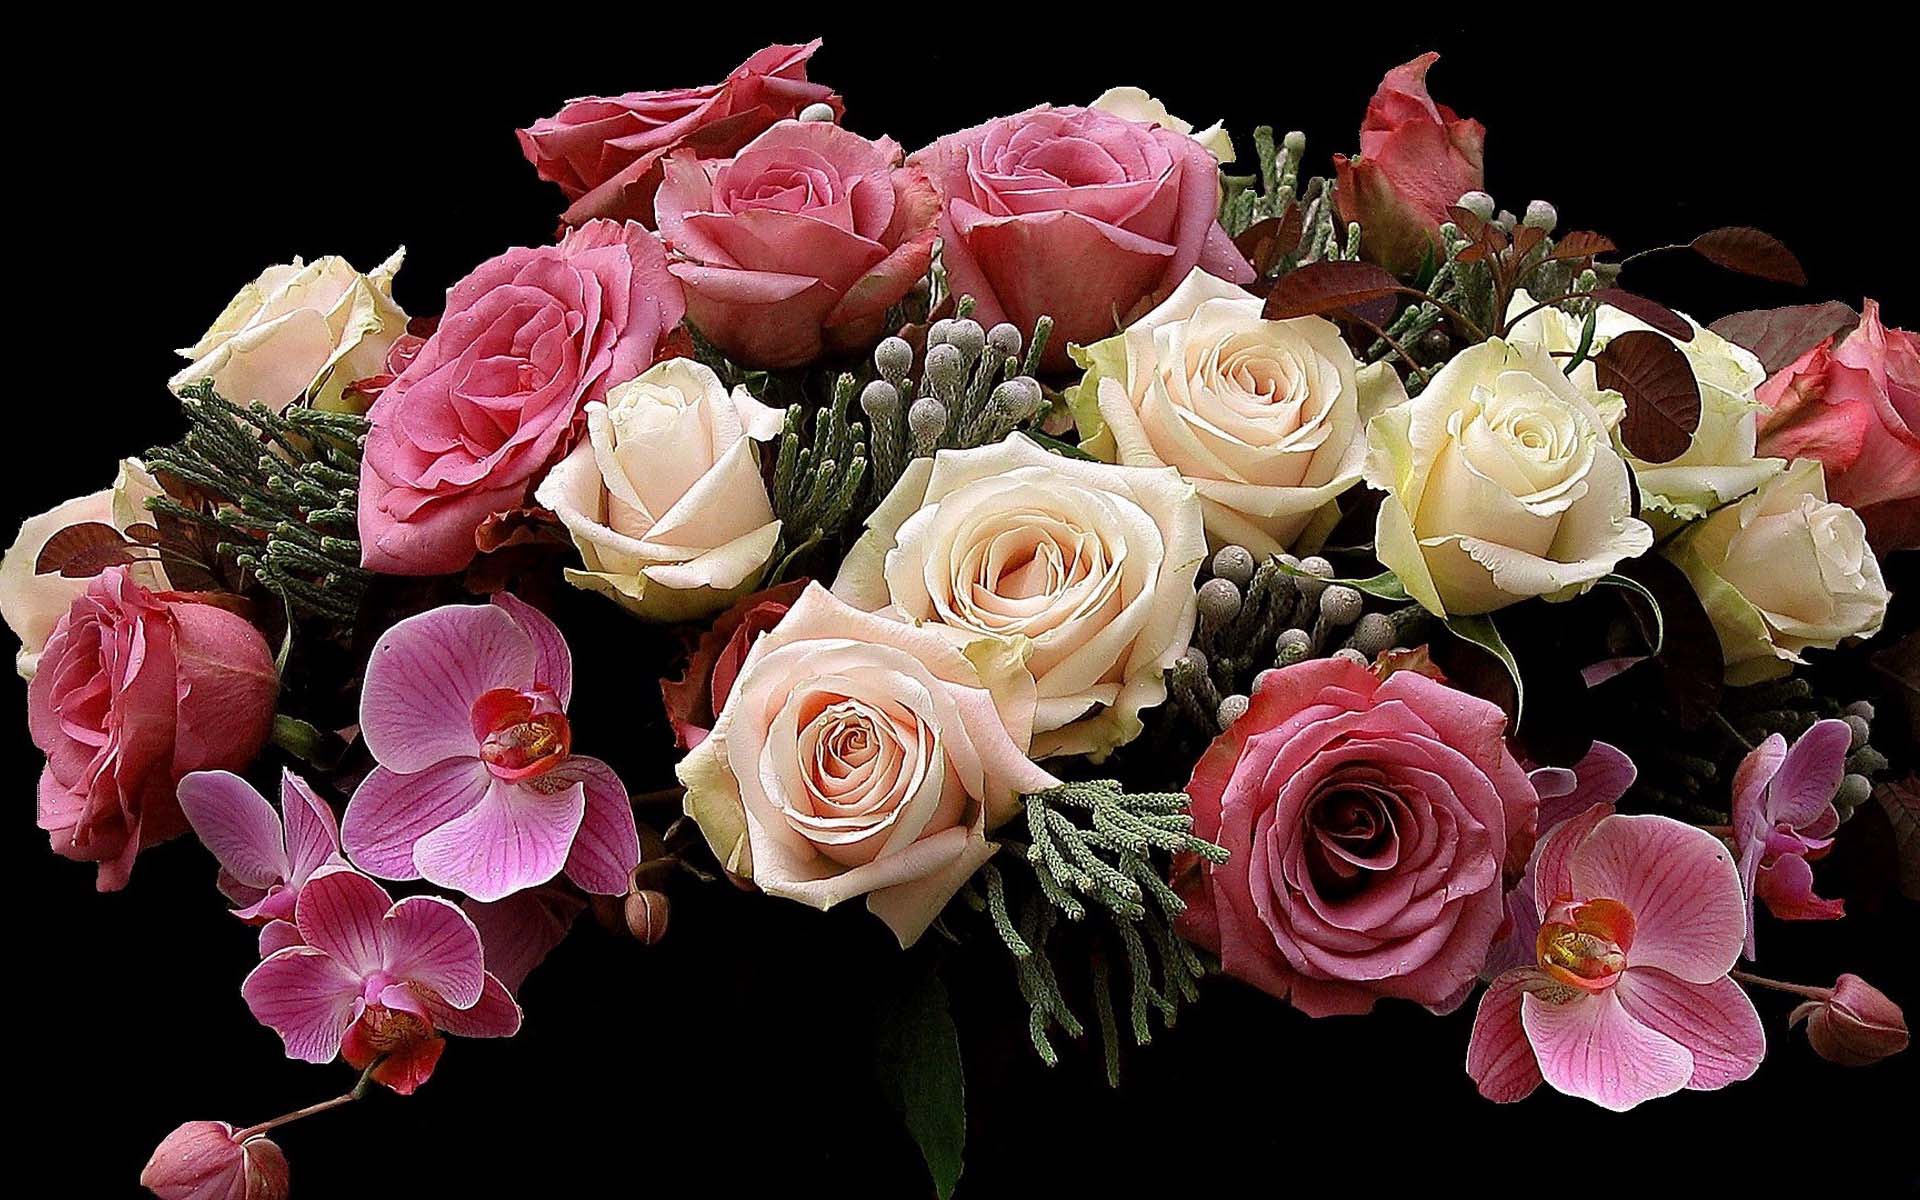 Скачать обои бесплатно Цветок, Роза, Ваза, Орхидея, Белый Цветок, Земля/природа, Розовый Цветок, Флауэрсы картинка на рабочий стол ПК